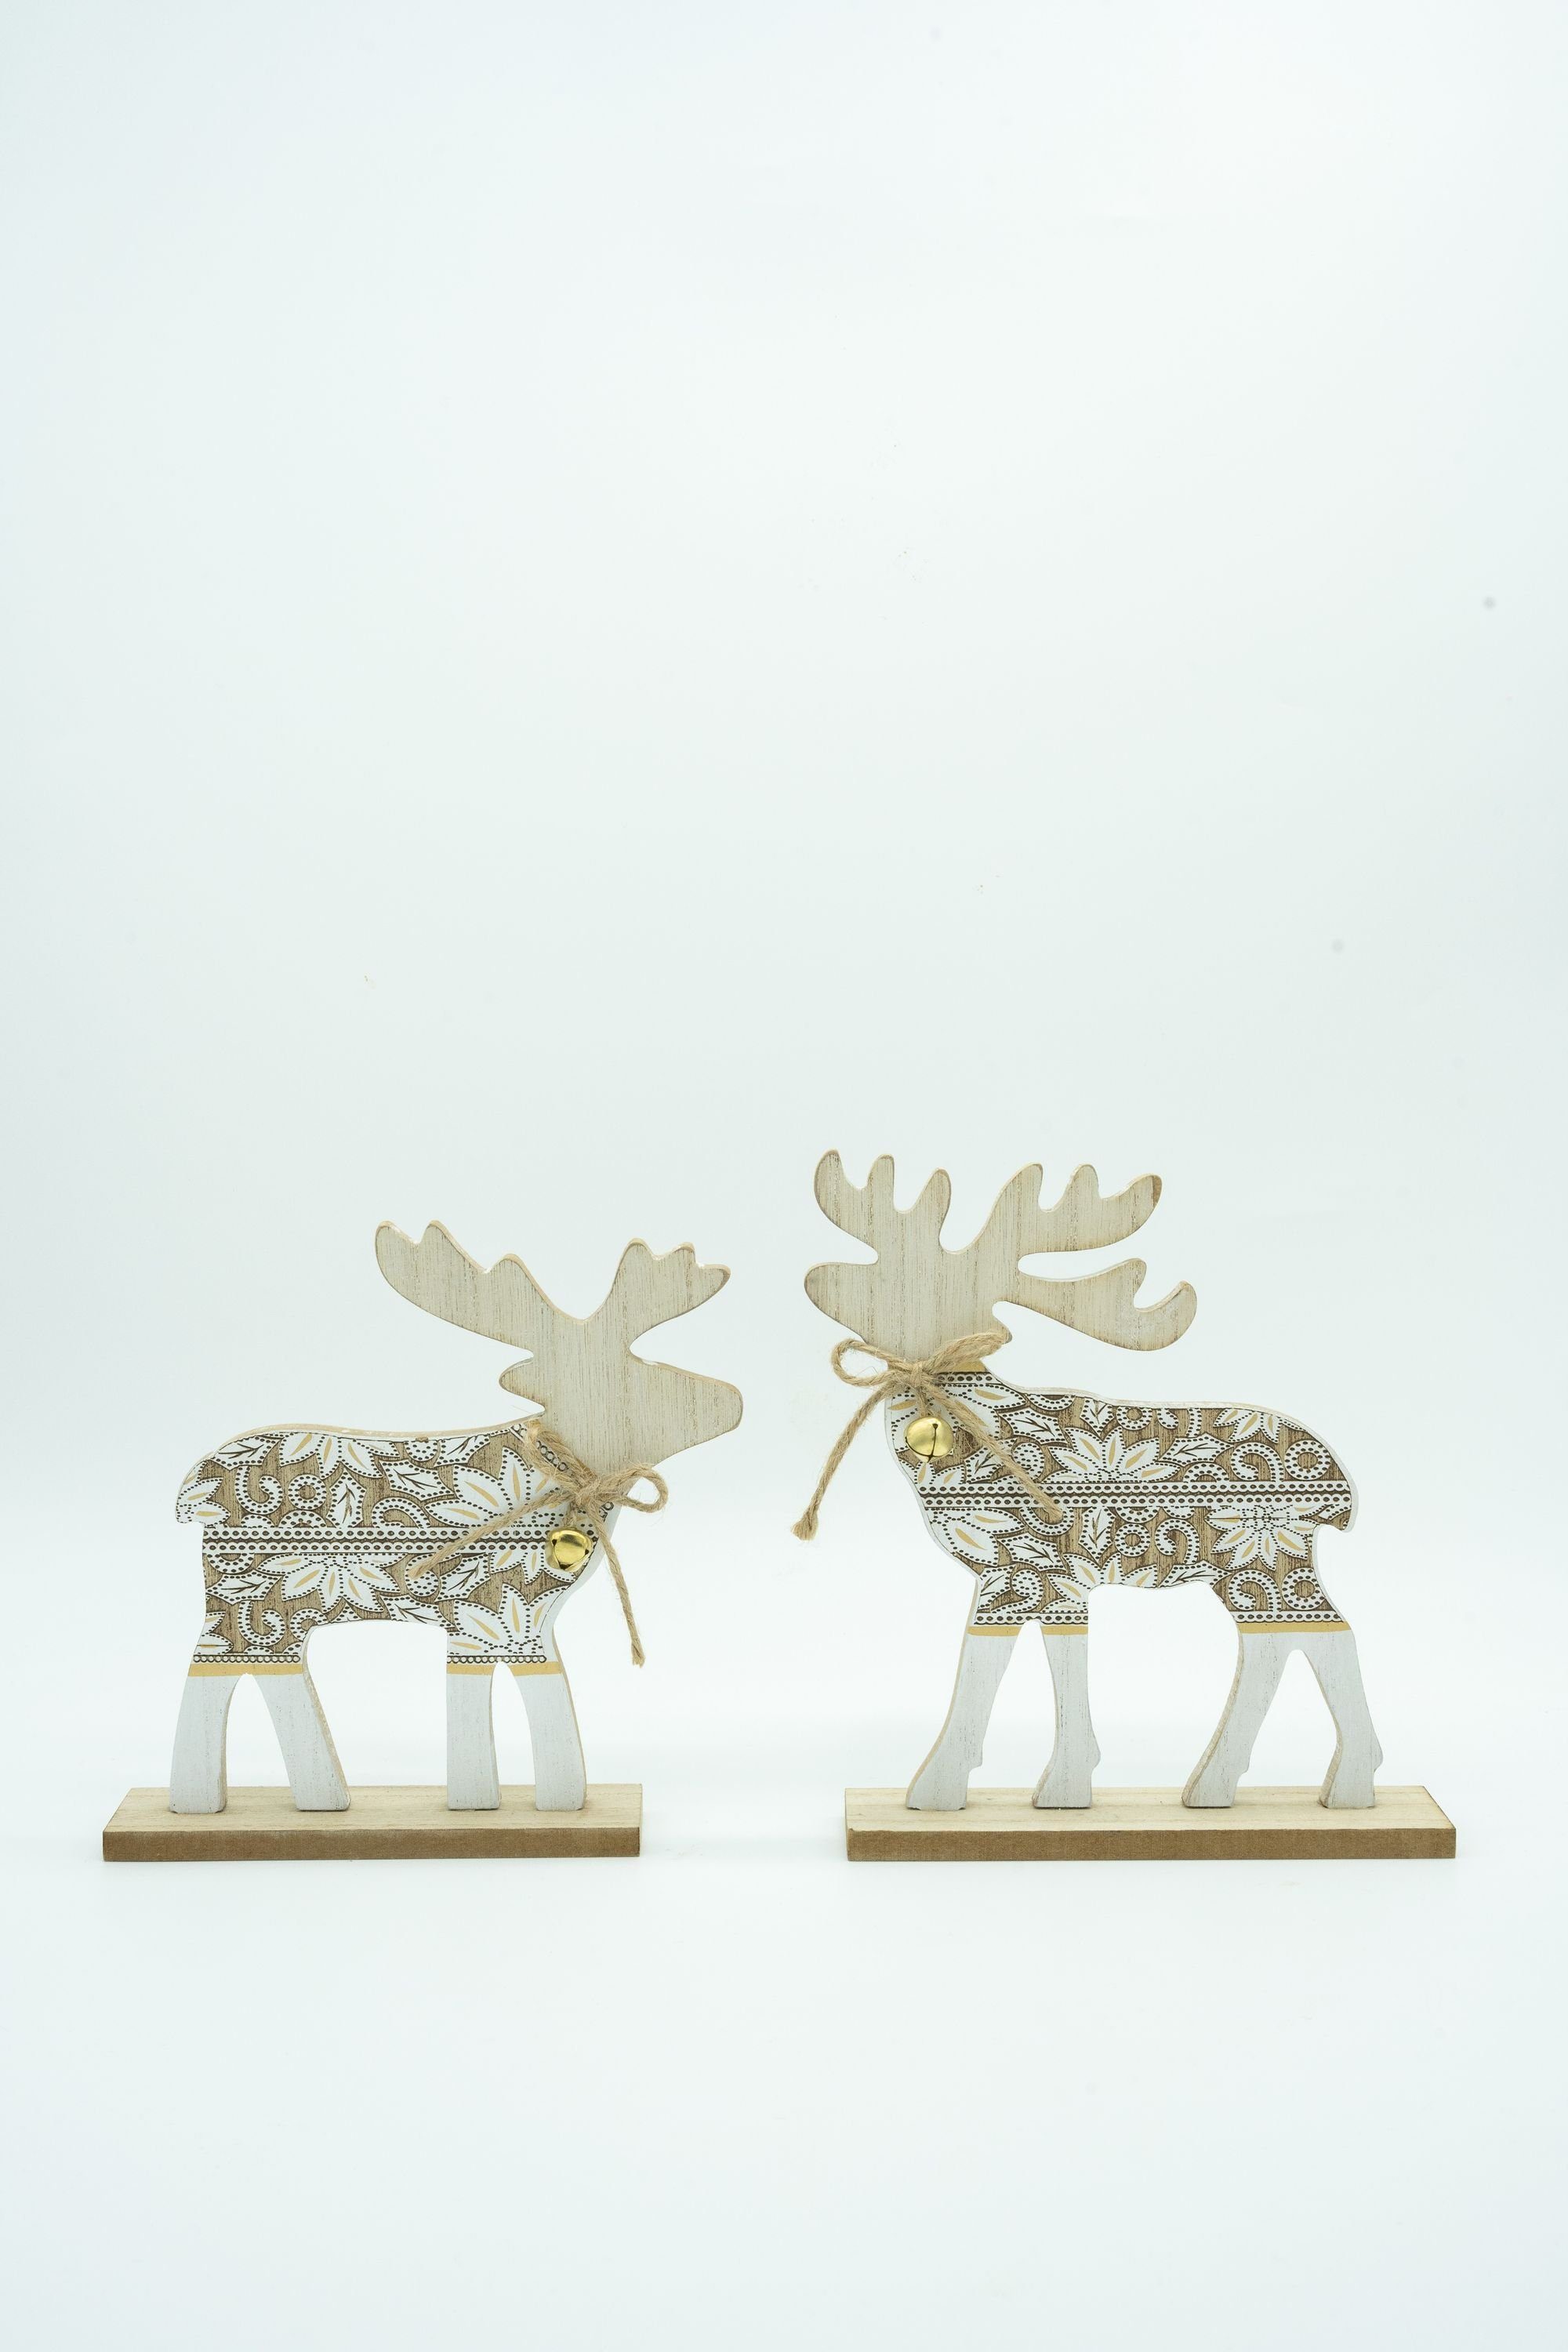 Heitmann DECO Weihnachtsfigur Hirsch mit Glocken, aus Holz, natur/weiß